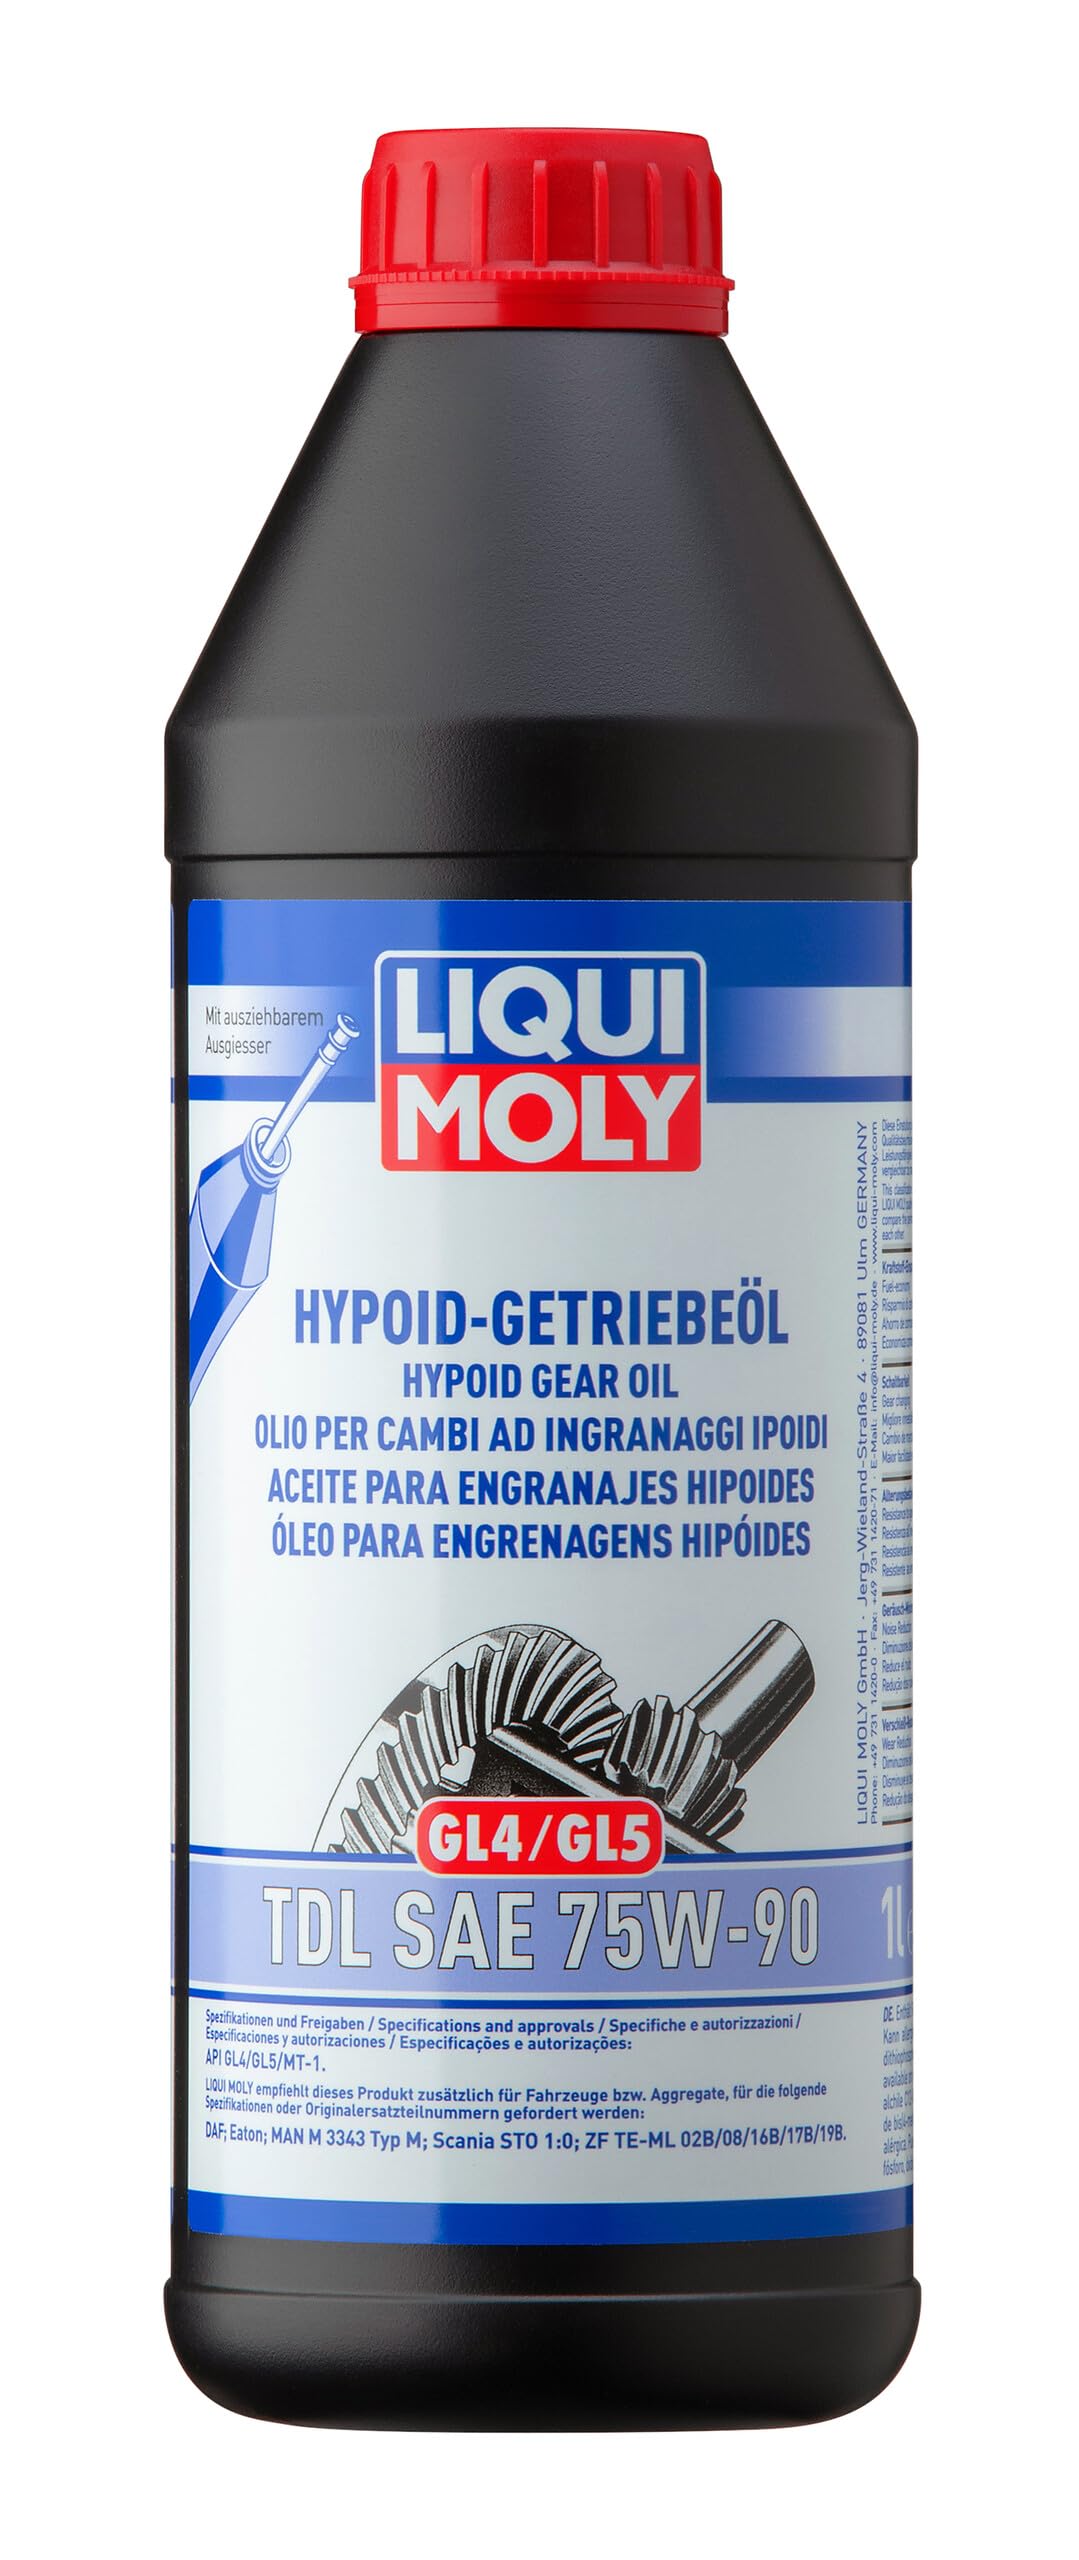 LIQUI MOLY Hypoid-Getriebeöl (GL4/5) TDL SAE 75W-90 | 1 L | Getriebeöl | Art.-Nr.: 1407 von Liqui Moly